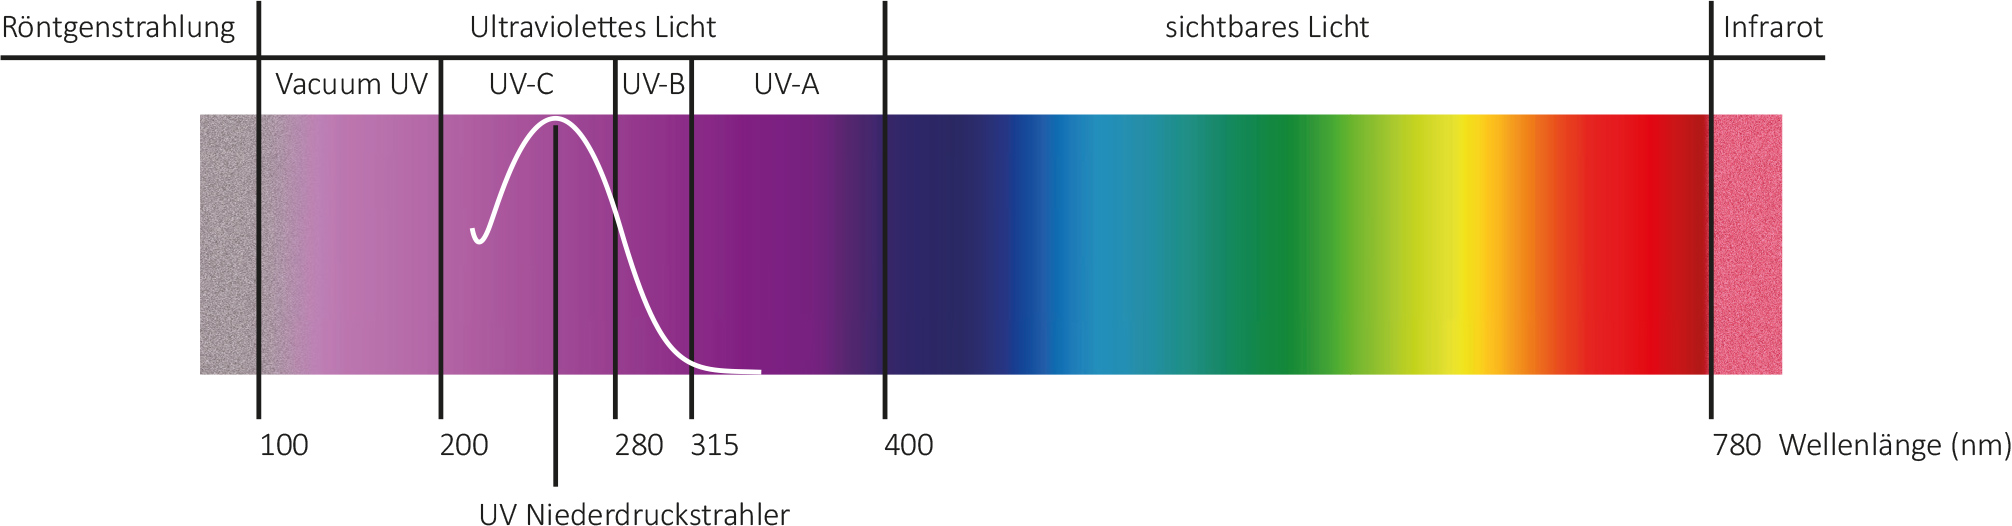 led uv-c ultraviolette strahlung